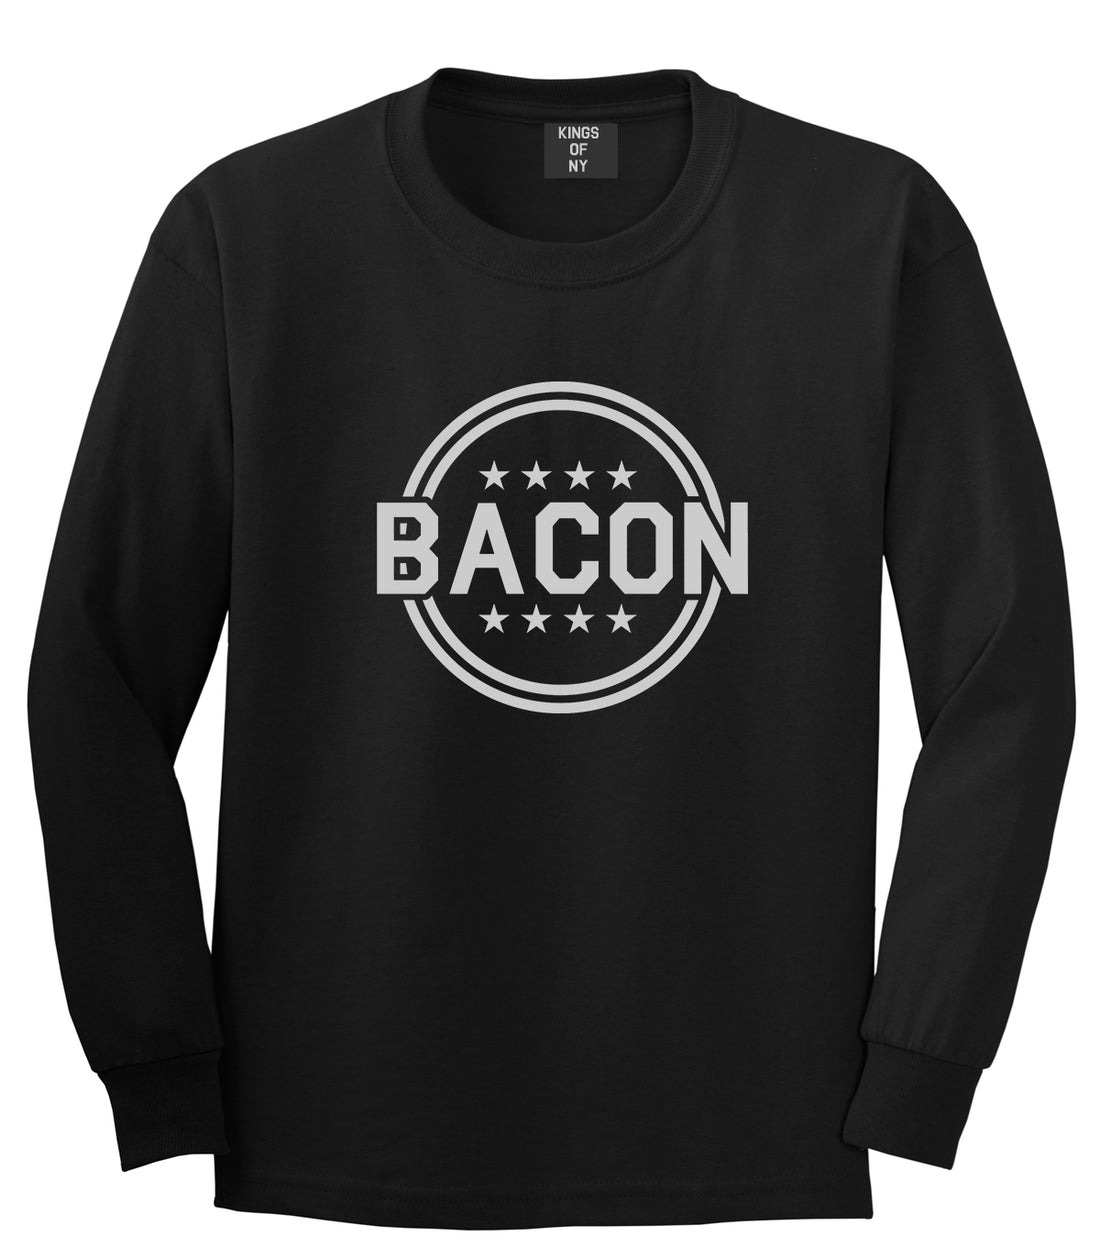 Bacon Stars Black Long Sleeve T-Shirt by Kings Of NY